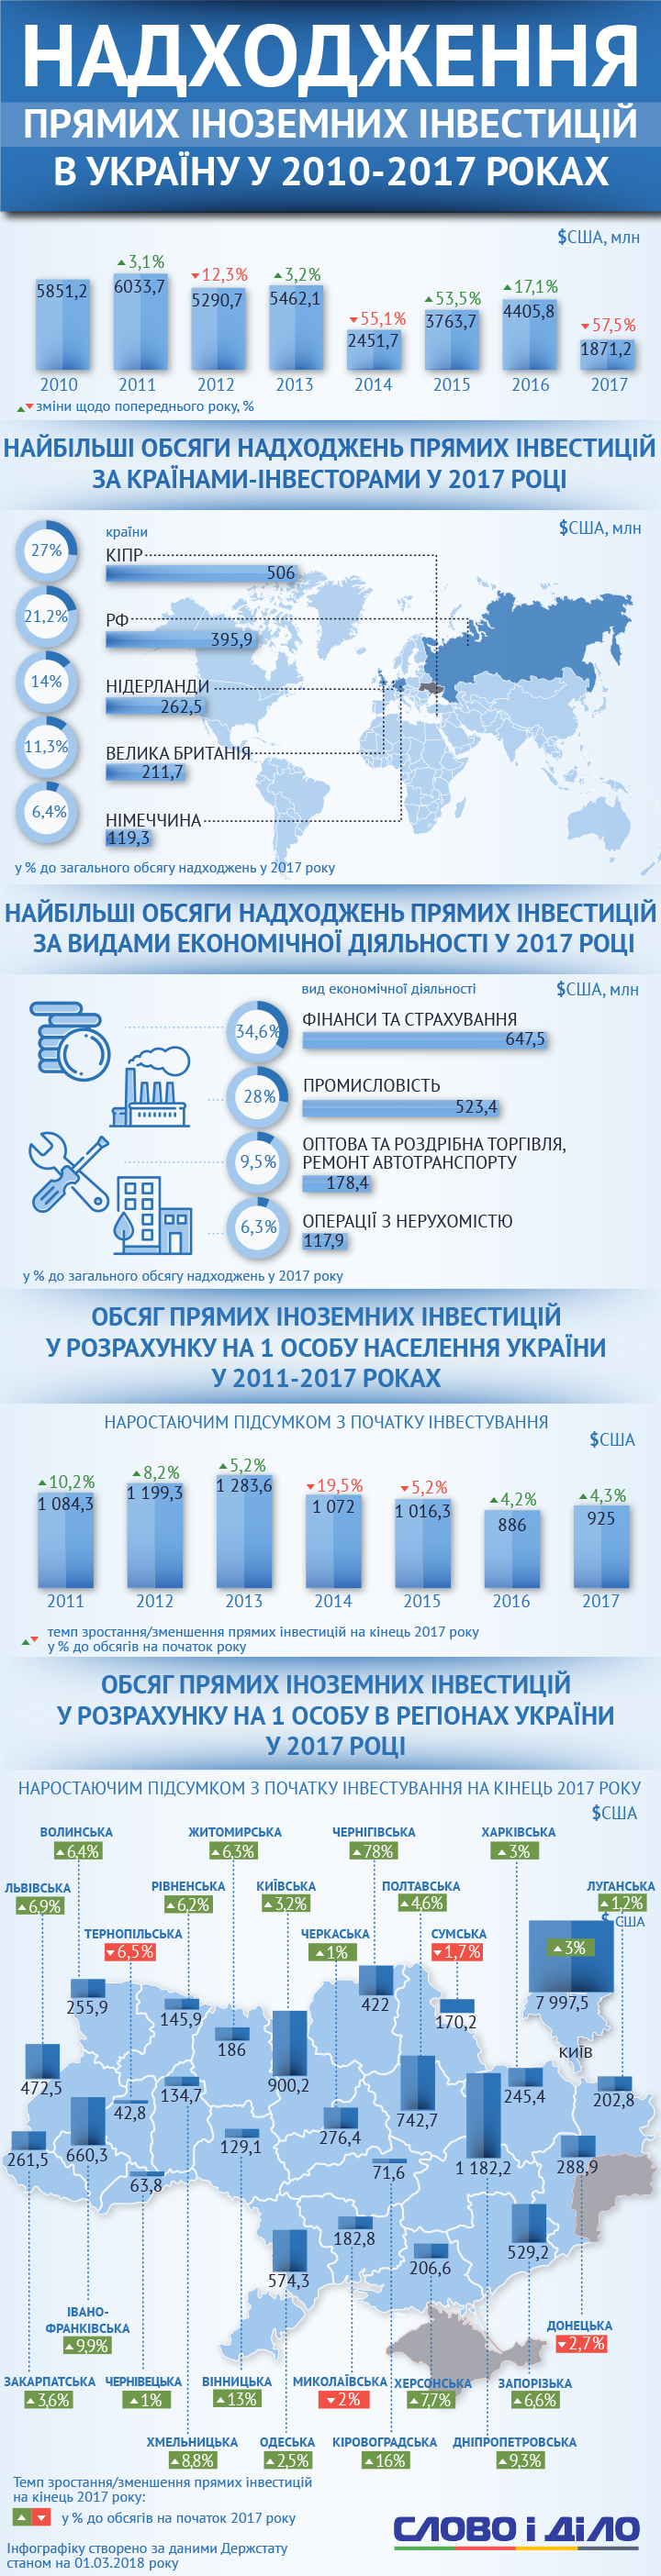 Прямі іноземні інвестиції в Україну минулого року склали 1 мільярд 817,2 мільйона гривень. Це на 57,5 відсотків менше, ніж у 2016-му.